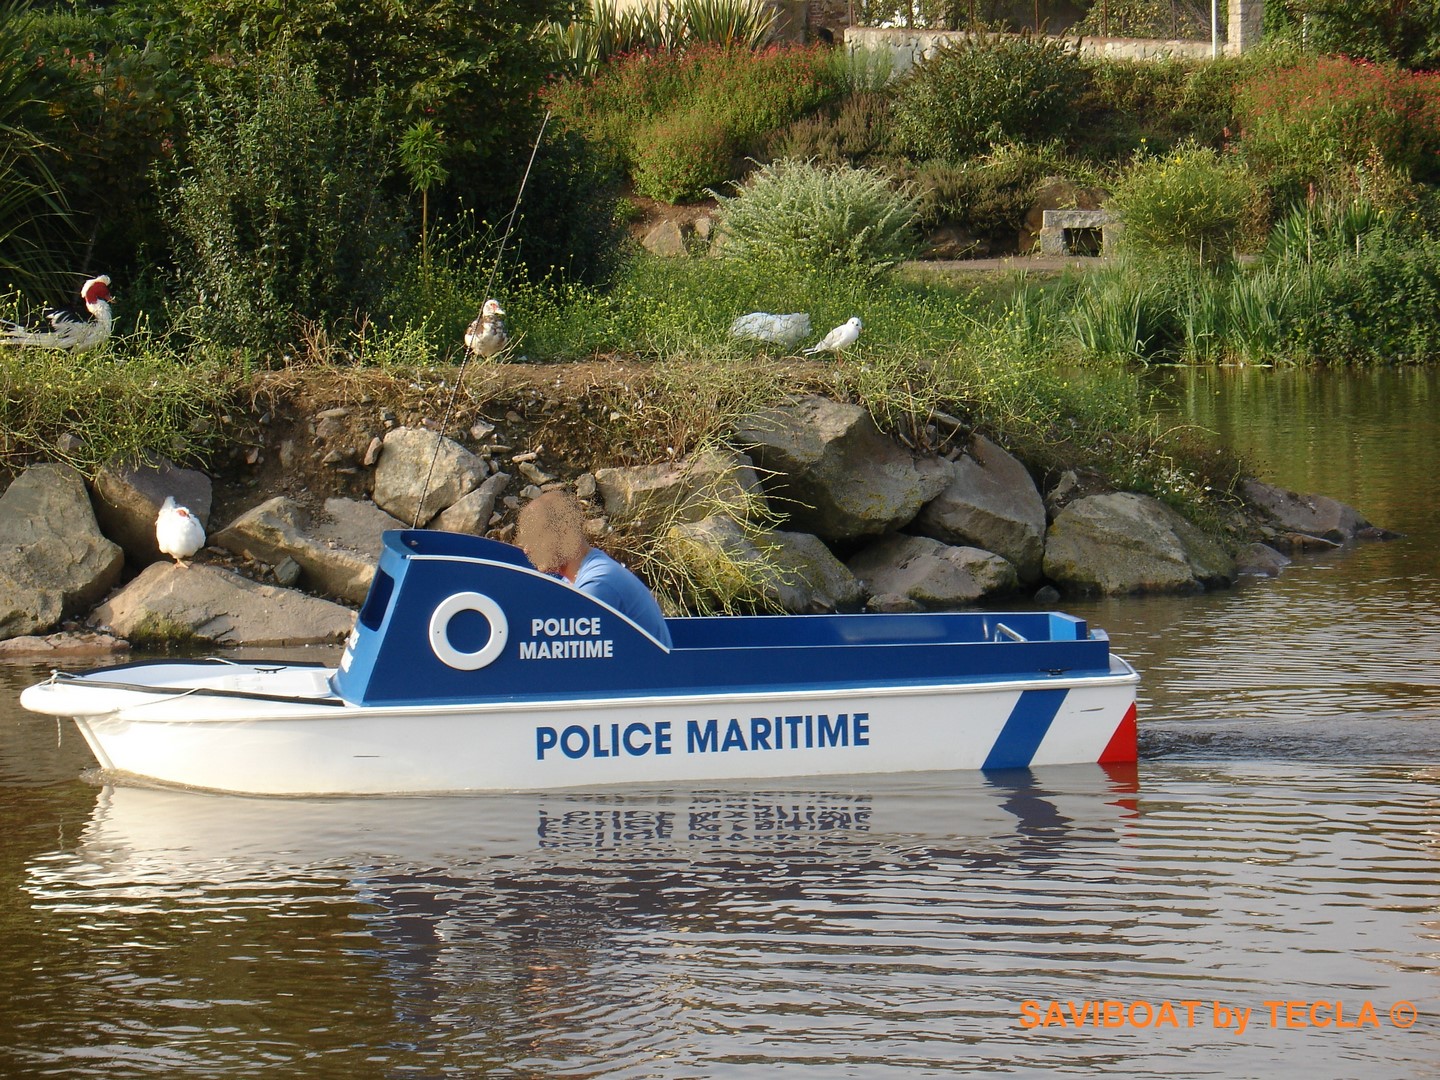 https://www.bateau-electrique.com/images/catalogue/saviboat-port-miniature-police-bateau-electrique-enfant.jpg